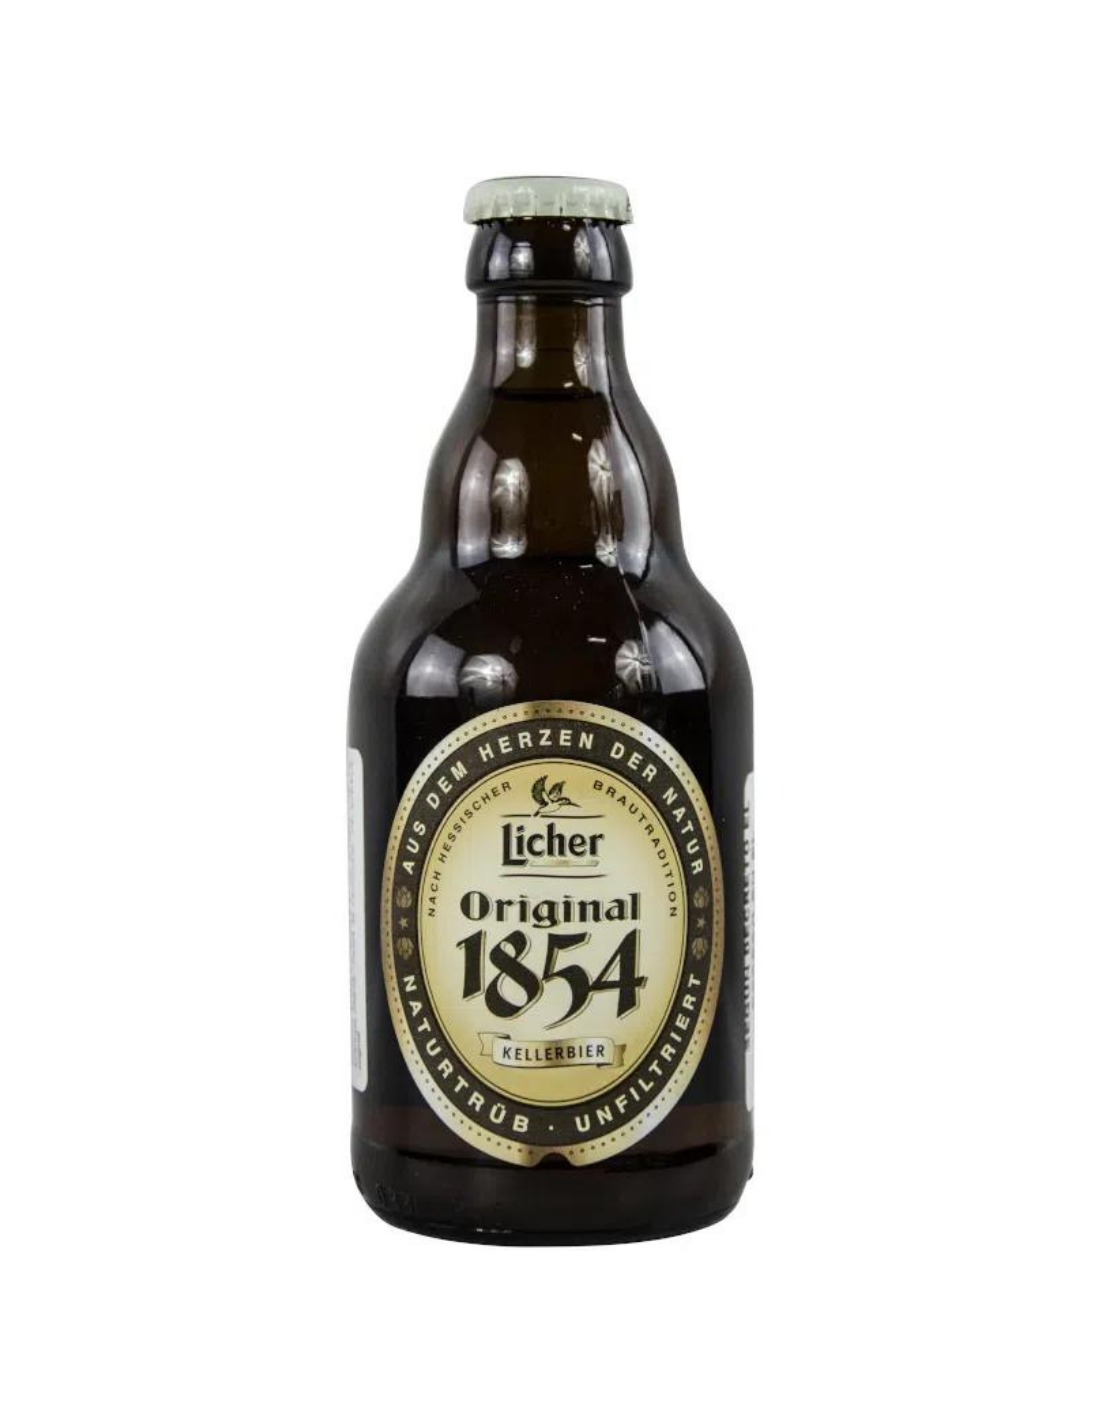 Bere blonda Licher Original, 5% alc., 0.33L, Germania alcooldiscount.ro